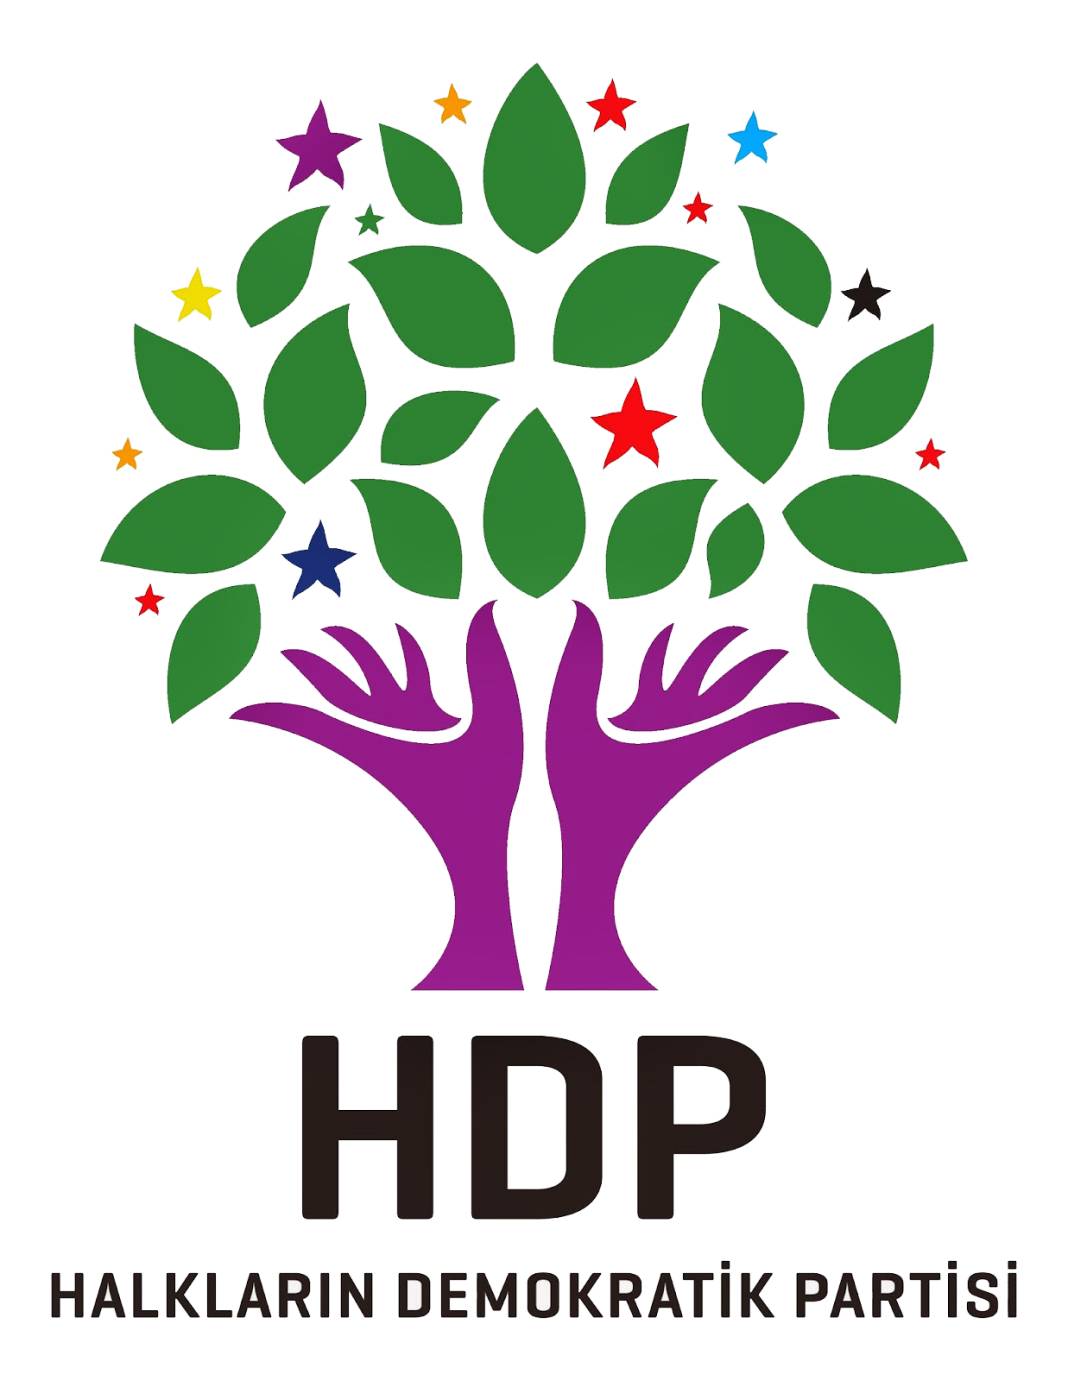 Hbs’den İstanbul anketi: AKP ile CHP arasındaki fark 2 puan 6